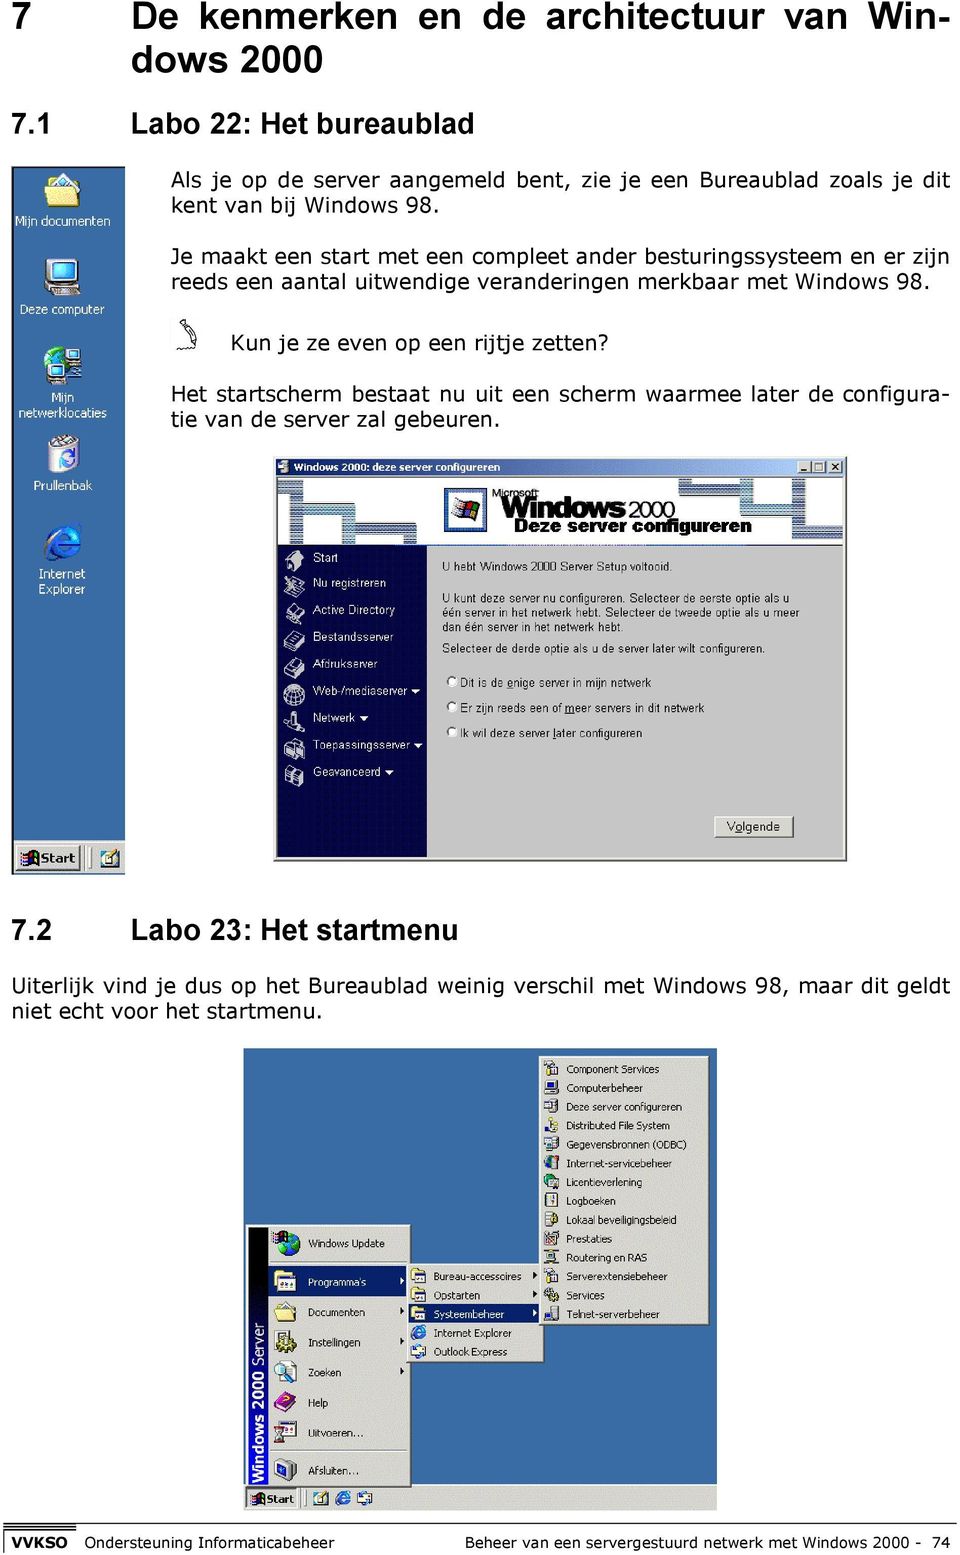 Je maakt een start met een compleet ander besturingssysteem en er zijn reeds een aantal uitwendige veranderingen merkbaar met Windows 98.